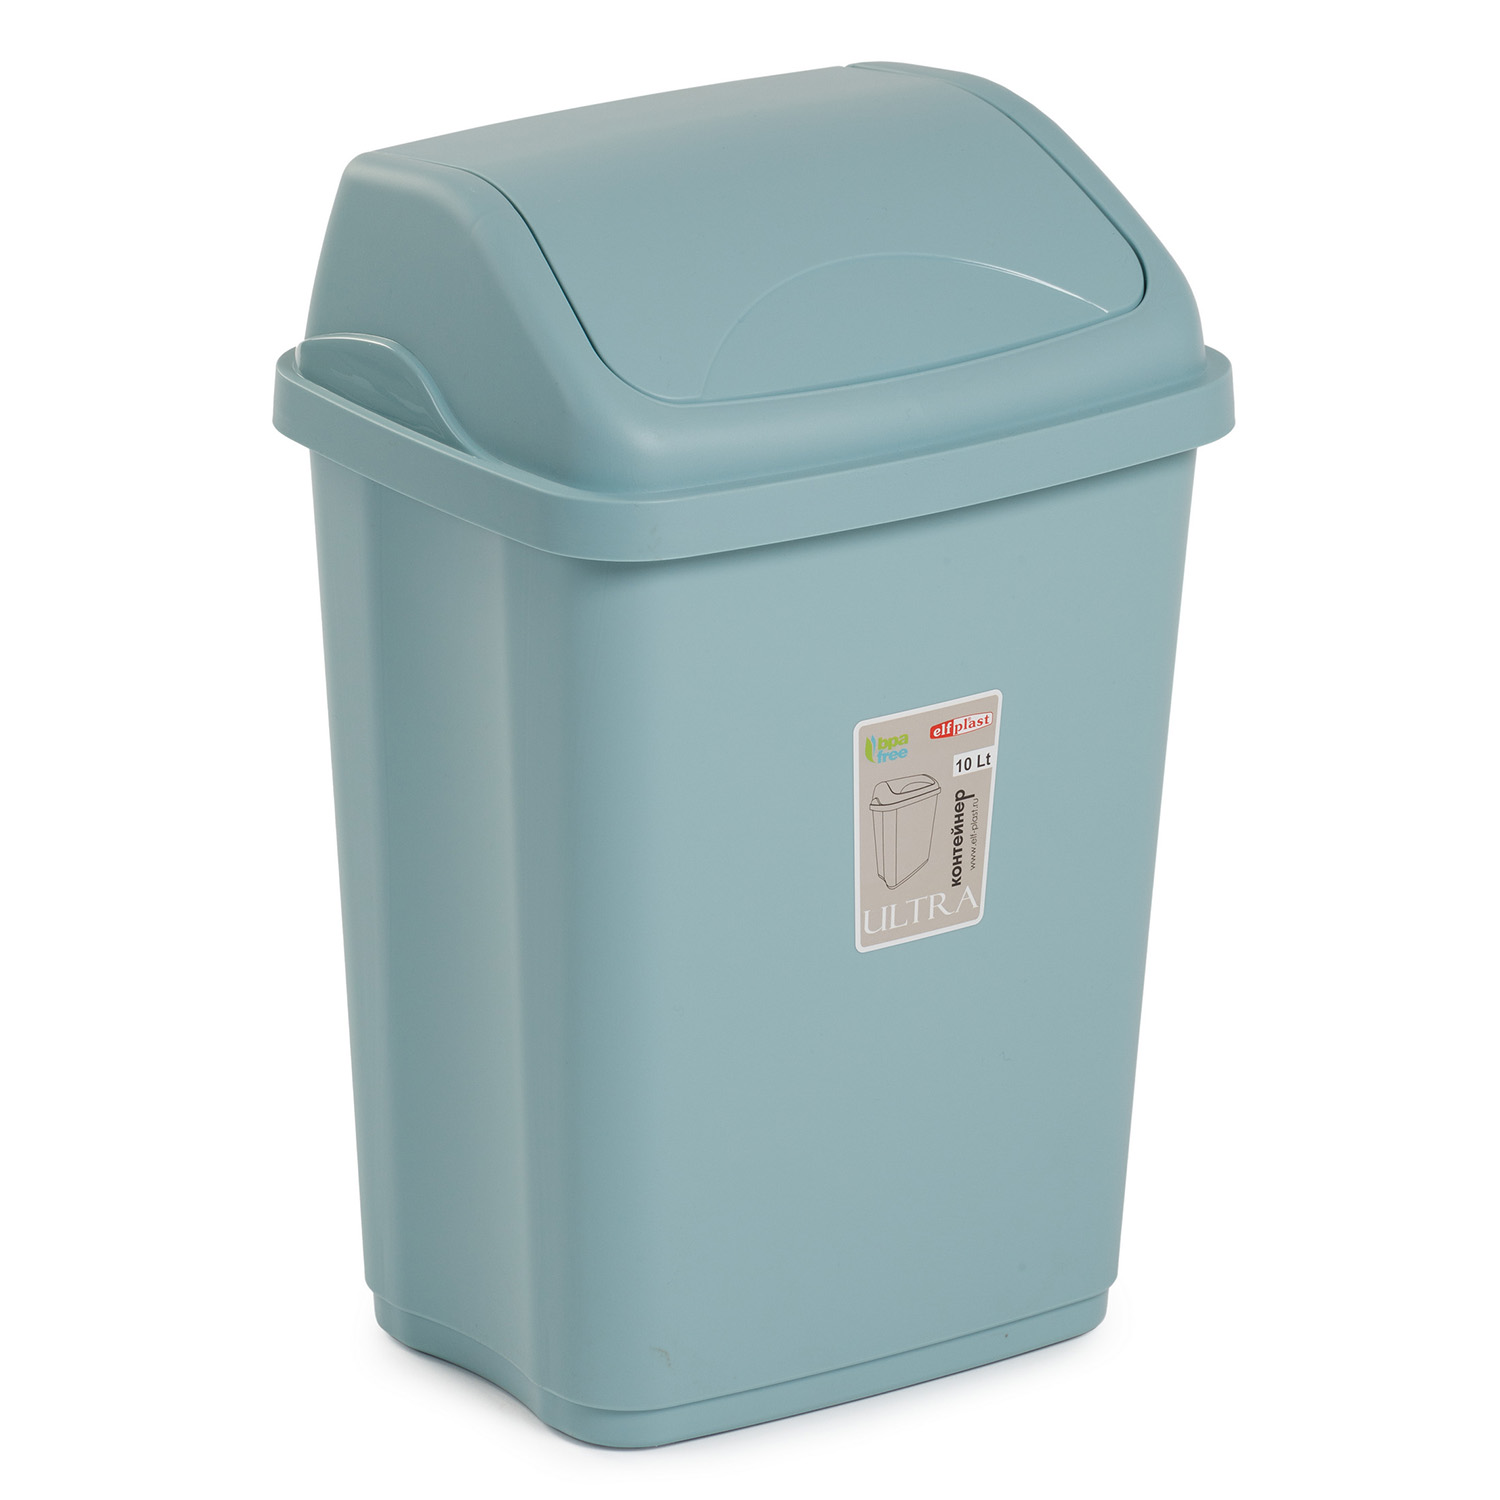 Контейнер elfplast Ultra для мусора 10 л 25.5х20.5х37.5 см голубой - фото 3